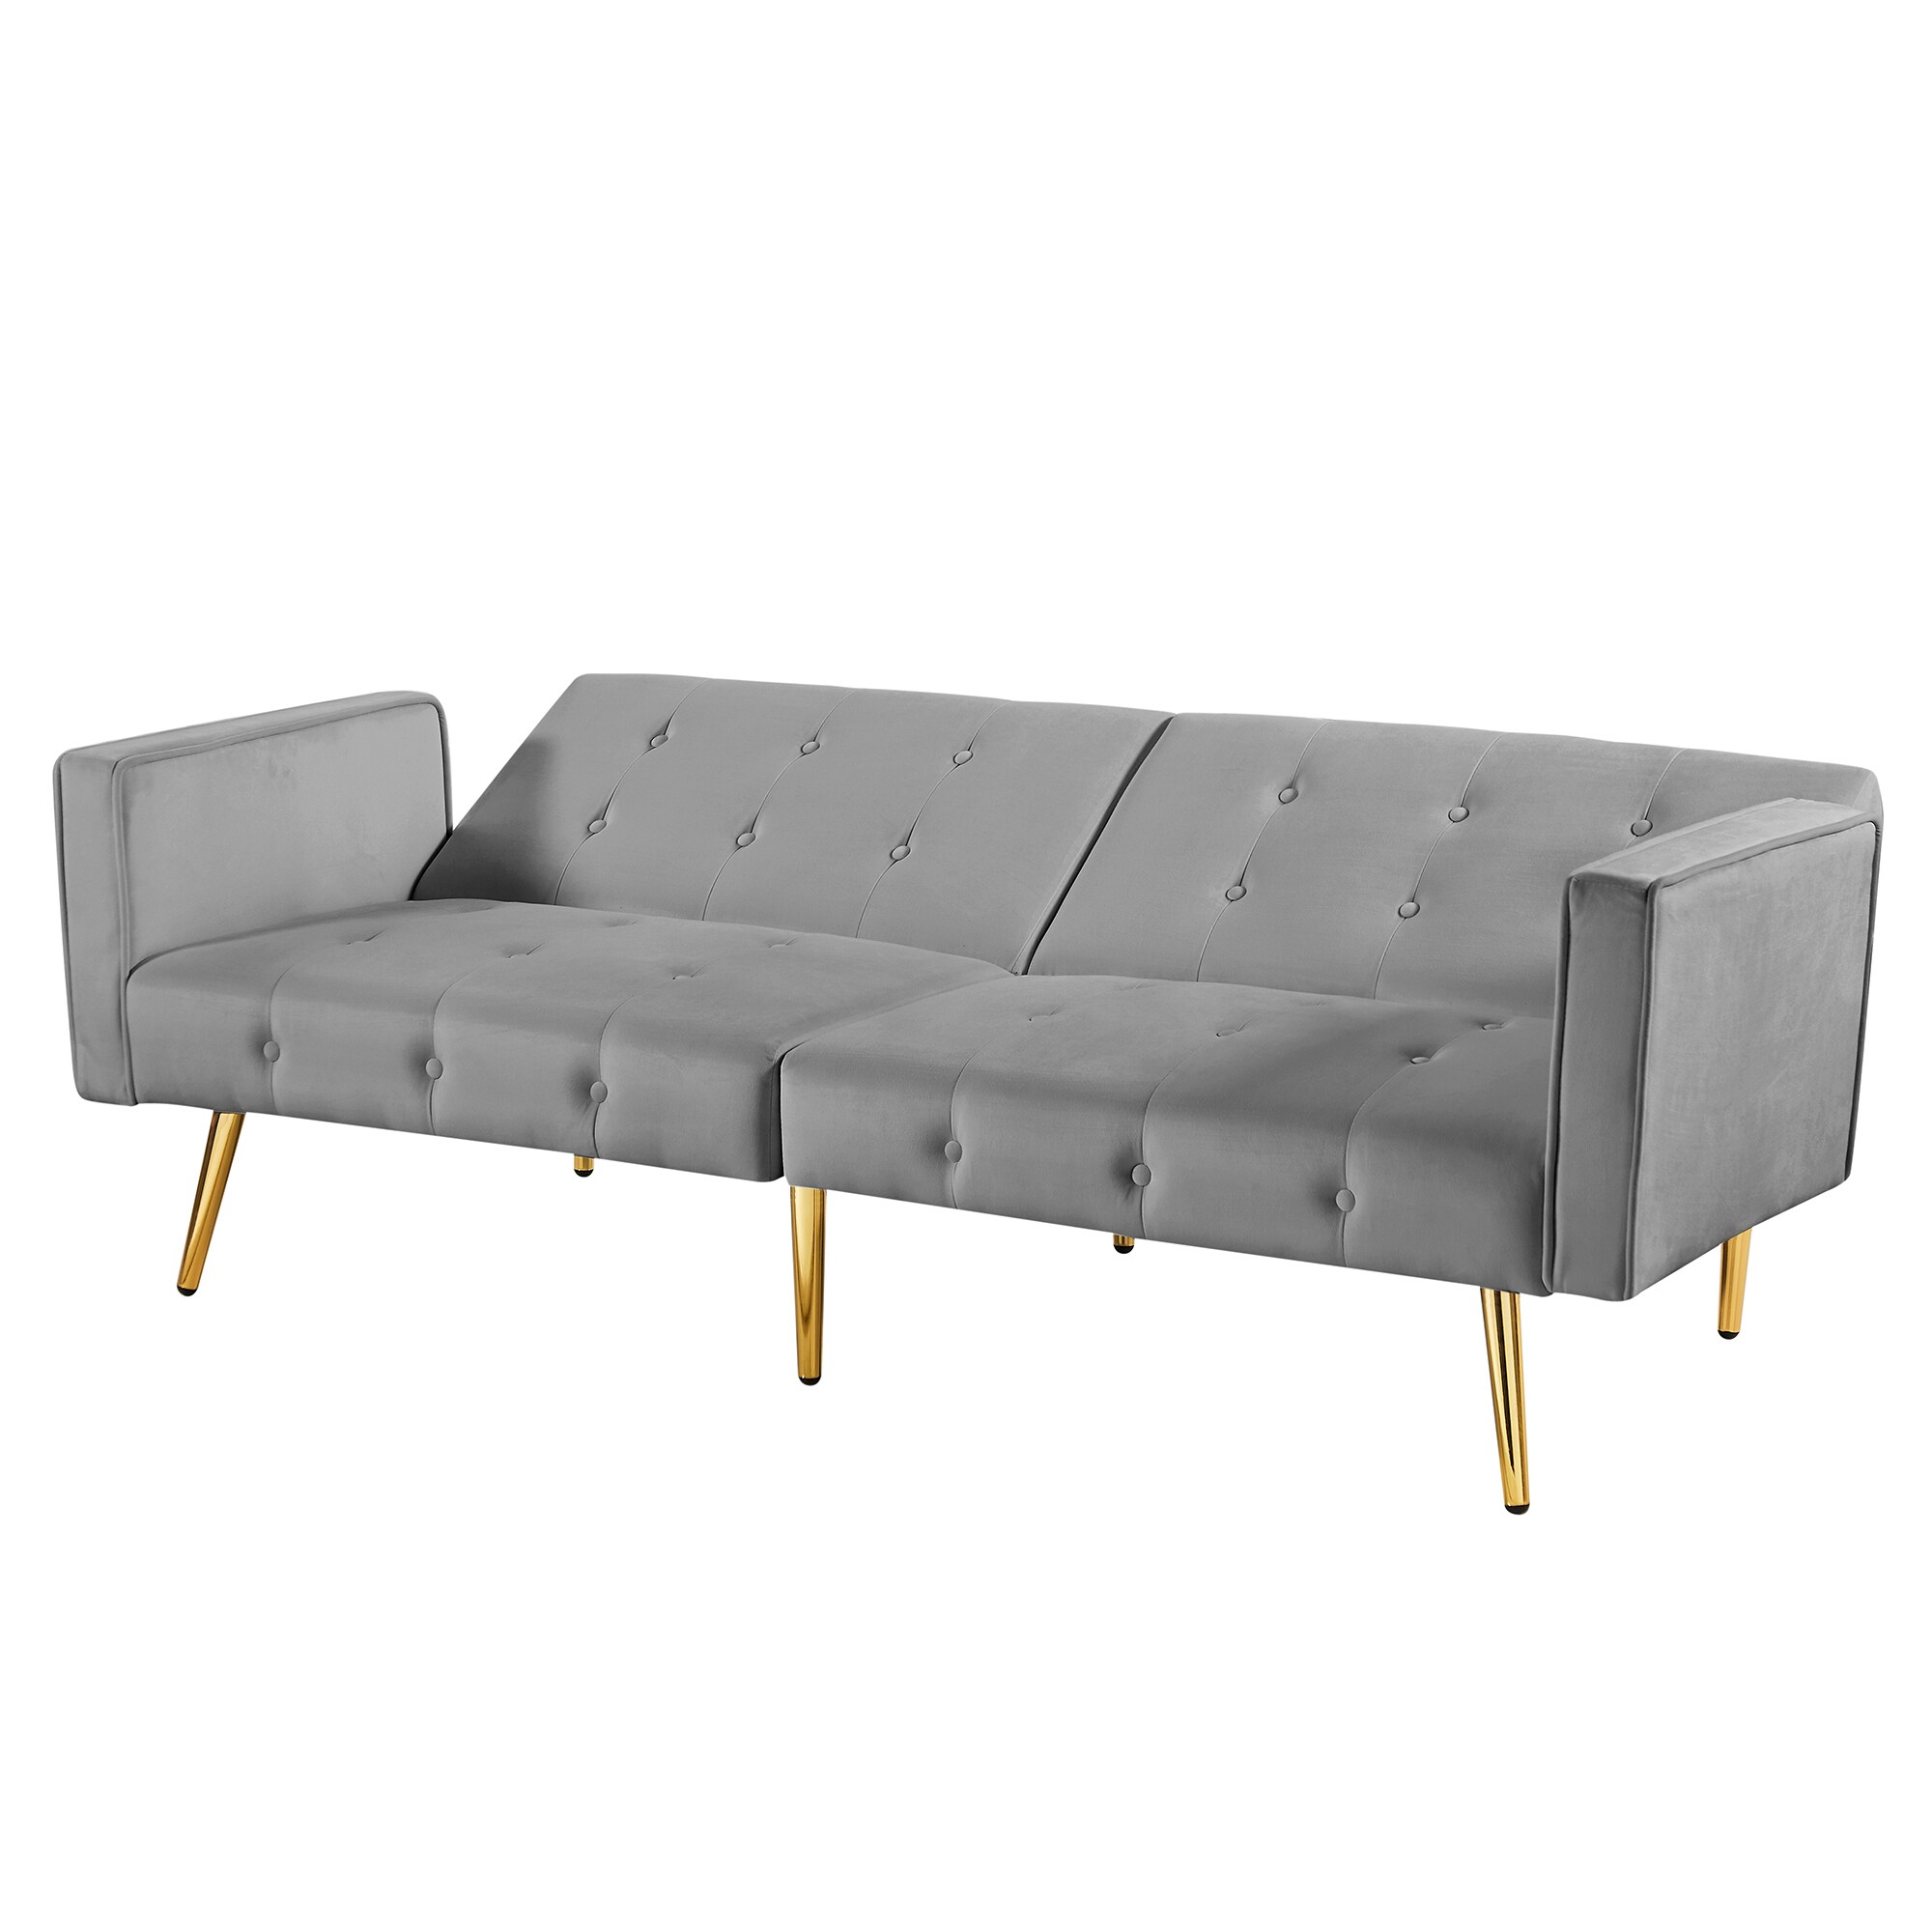 CASAINC Modern stylish upholstered sofa 76-in Modern Gray Velvet ...